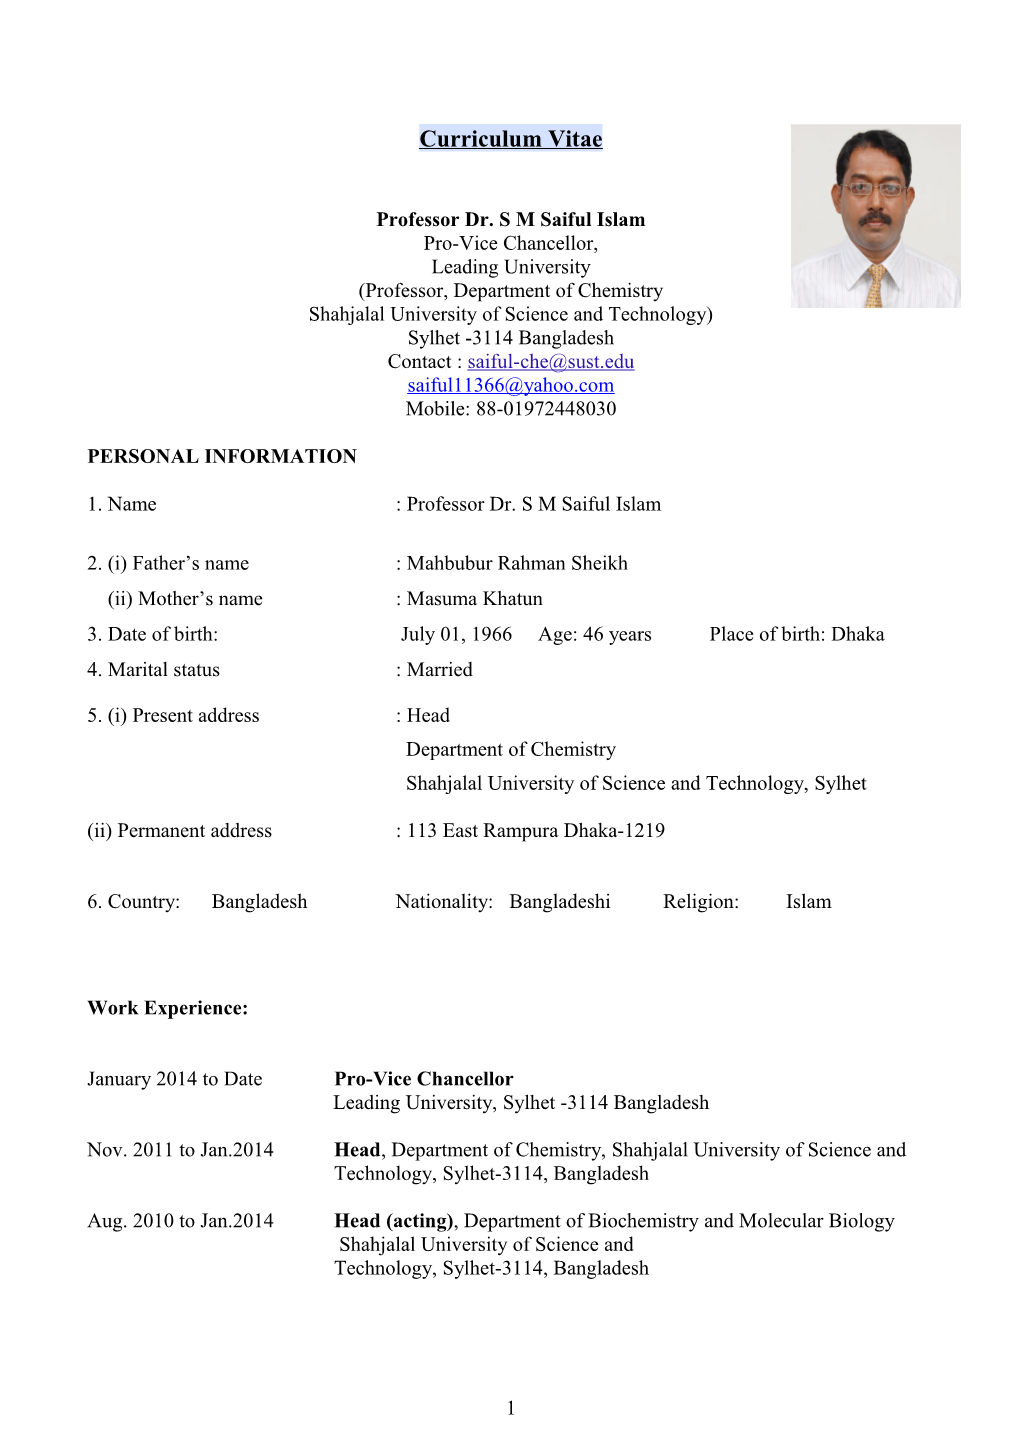 Professor Dr. S M Saiful Islam